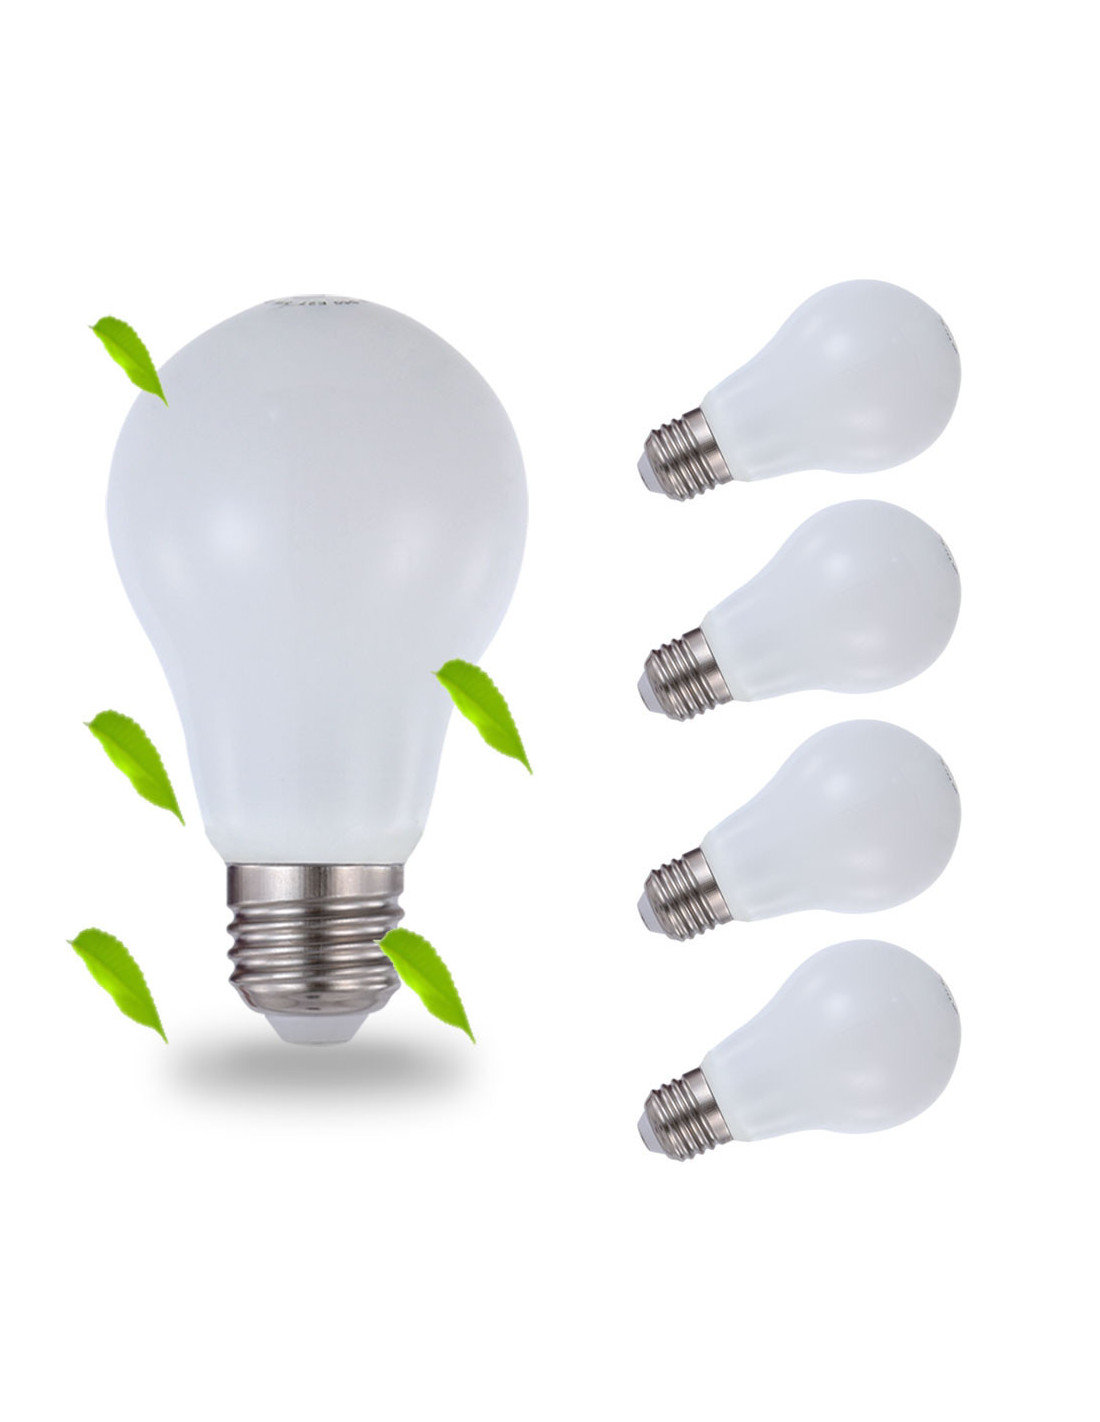 LUXBIEN LED light bulb 5W replaces 40 watt E27, 5W 400 lumens dimmable [3000K - 4000K - 6000K]